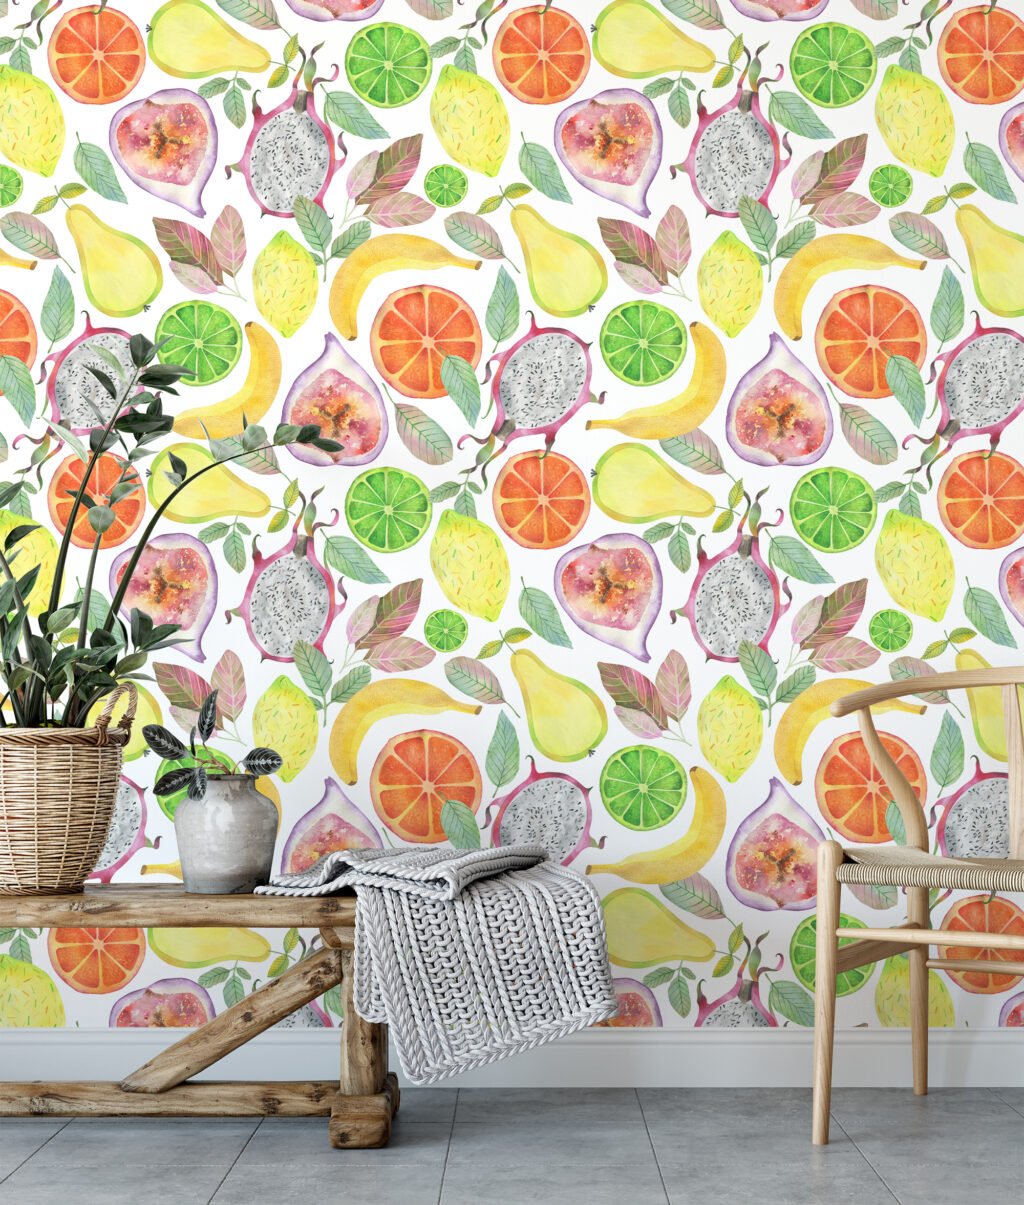 Sulu Boya Tarzı Egzotik Meyve Desenli Duvar Kağıdı, Lezzetli Taze Meyve 3D Duvar Posteri Suluboya Duvar Kağıtları 3